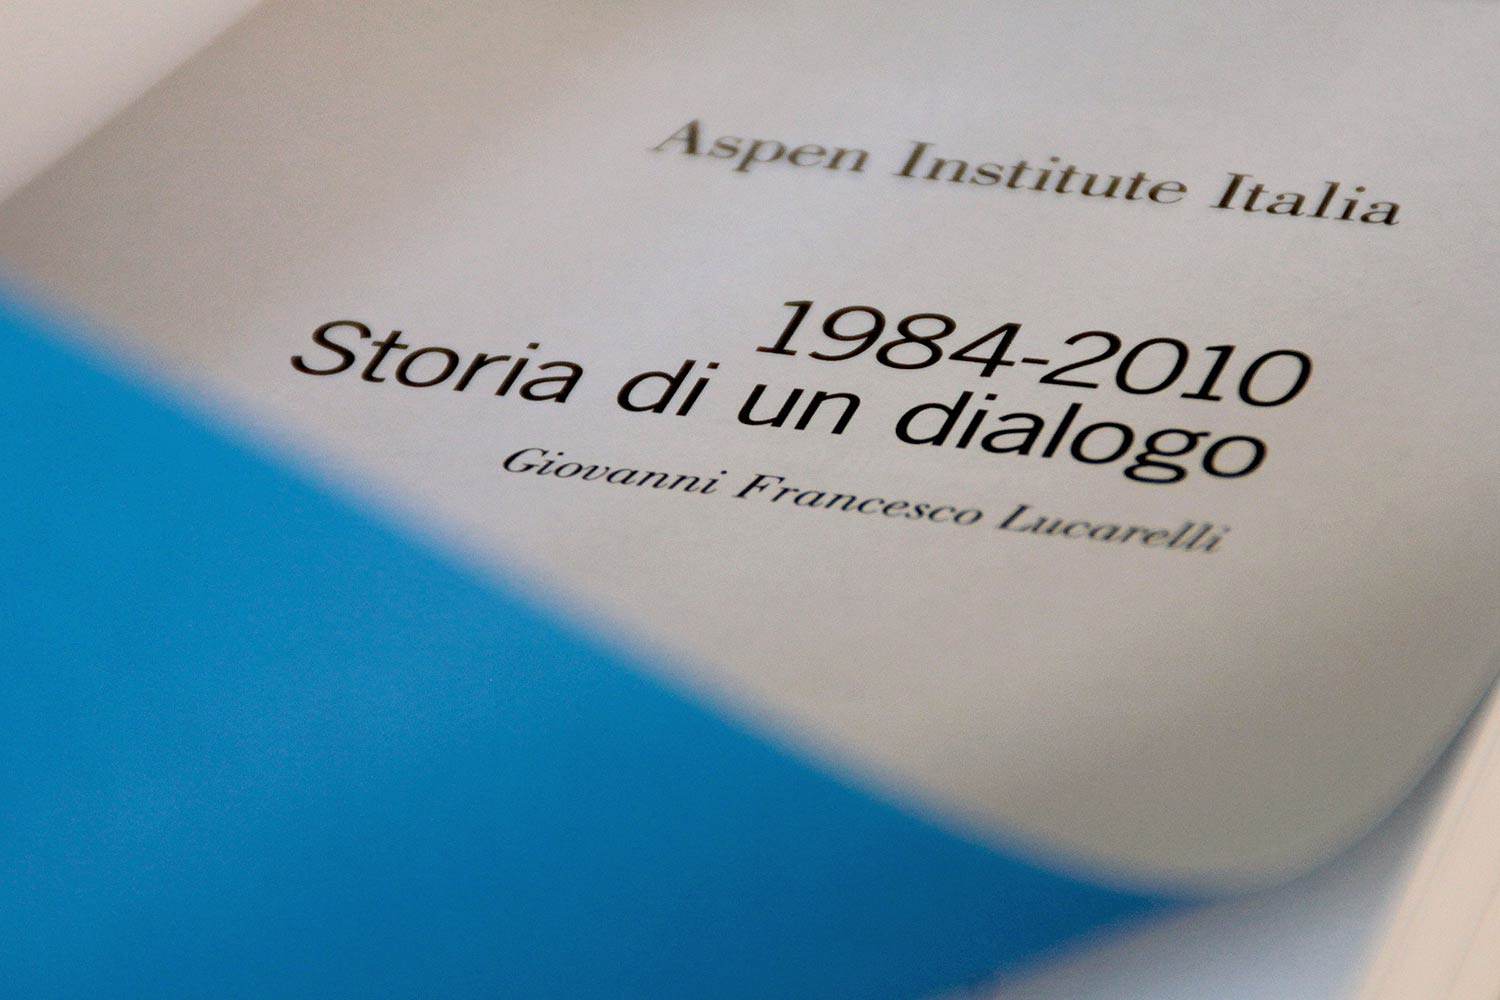 aspen institute italia storia dialogo